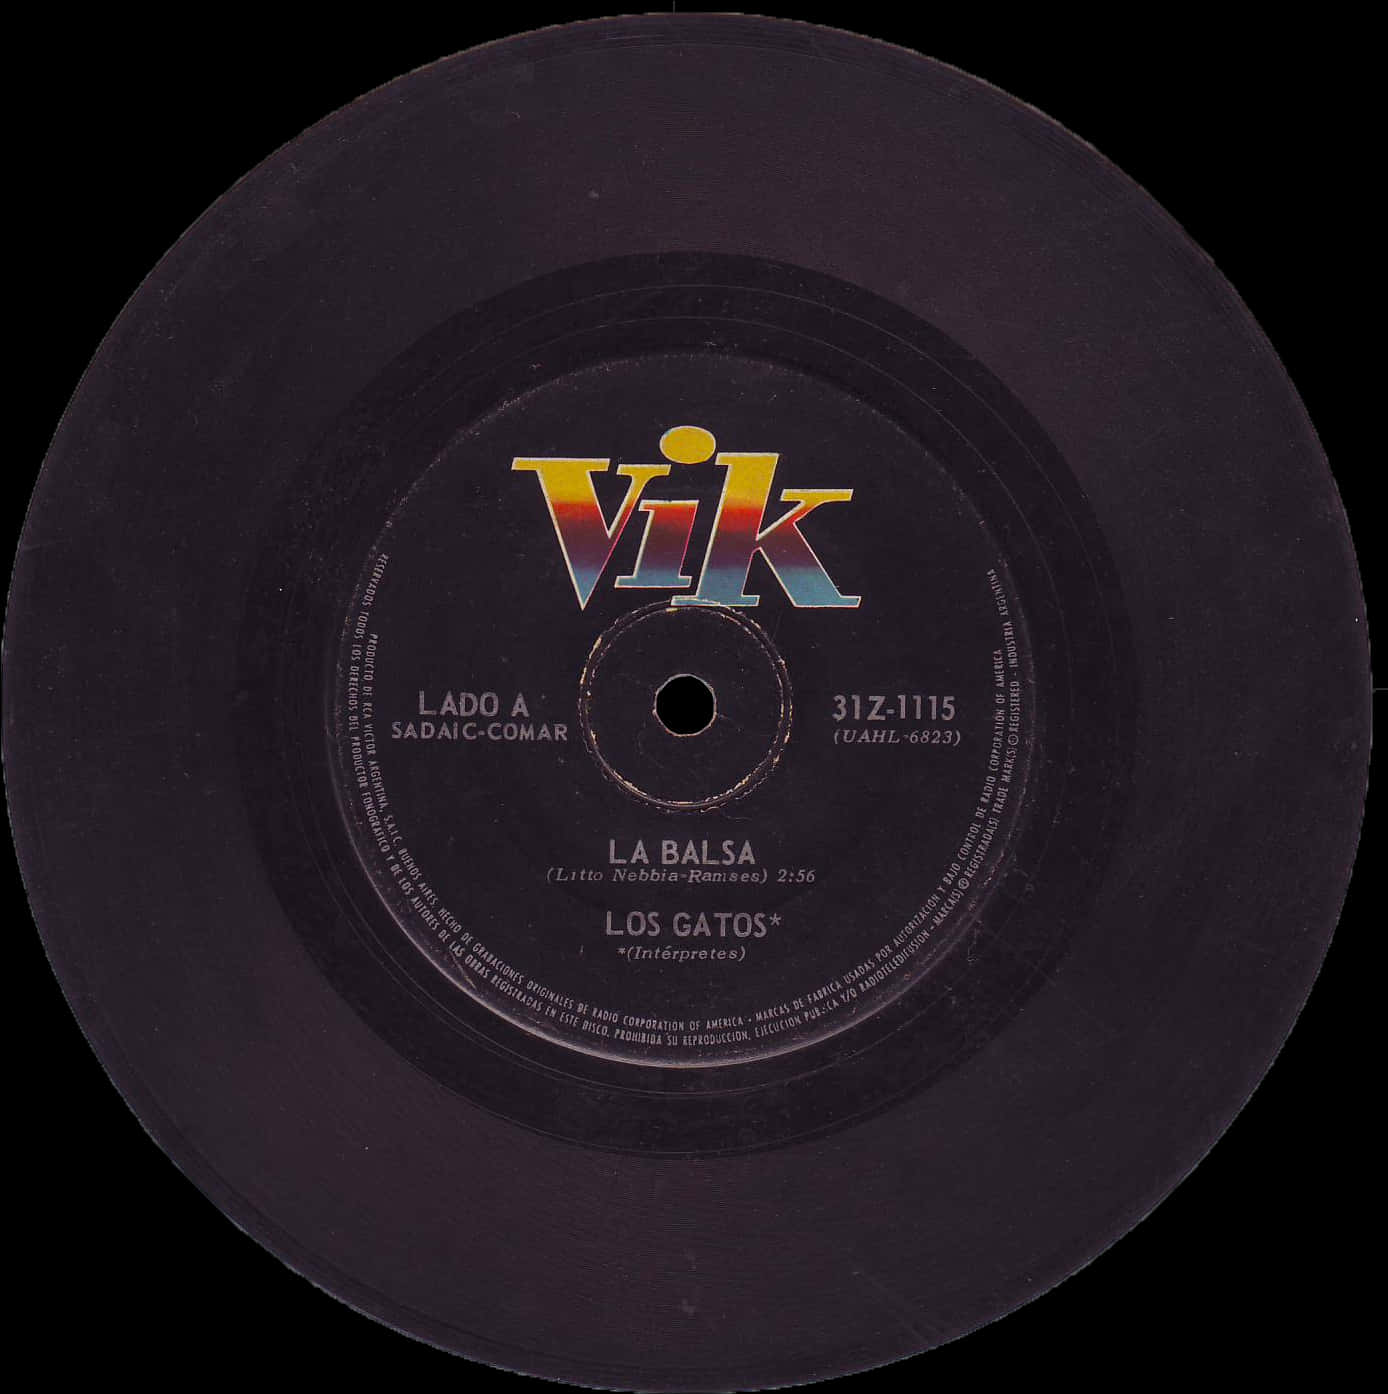 Vintage Vik Record La Balsa Los Gatos